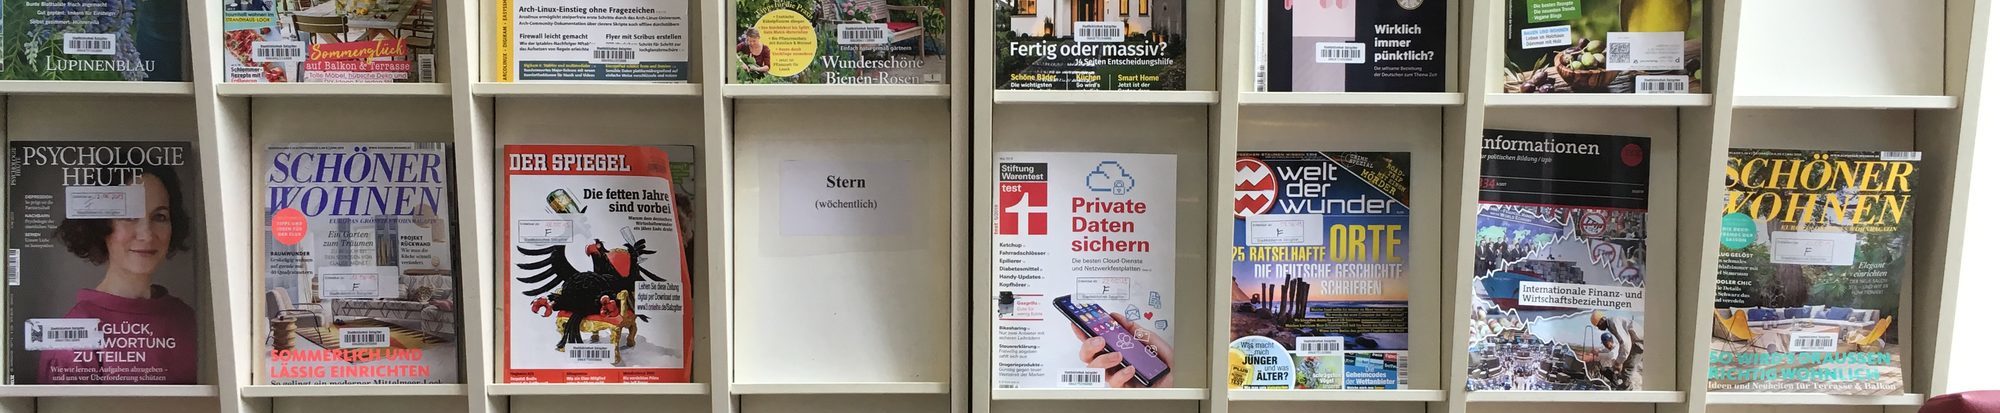 Zeitschriftenregal der Stadtbibliothek in Fredenberg